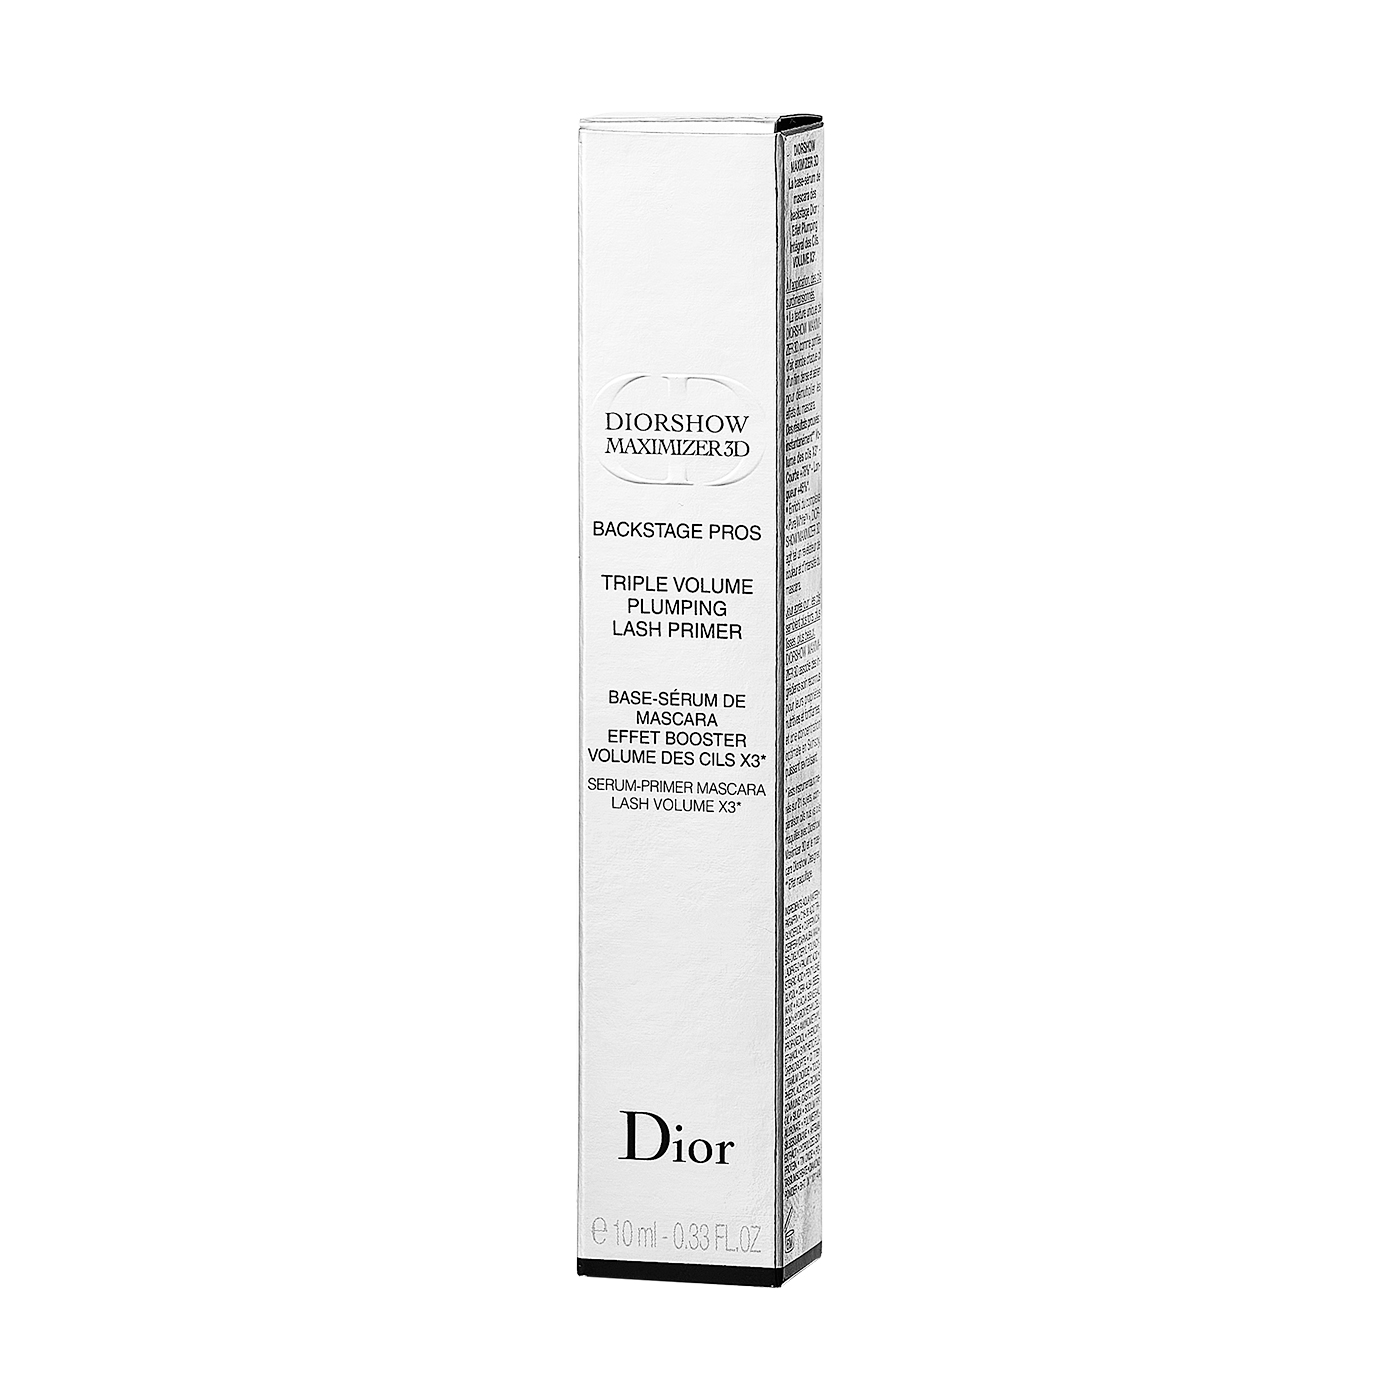 クリスチャンディオール Dior ディオールショウマキシマイザー3D 10ml 